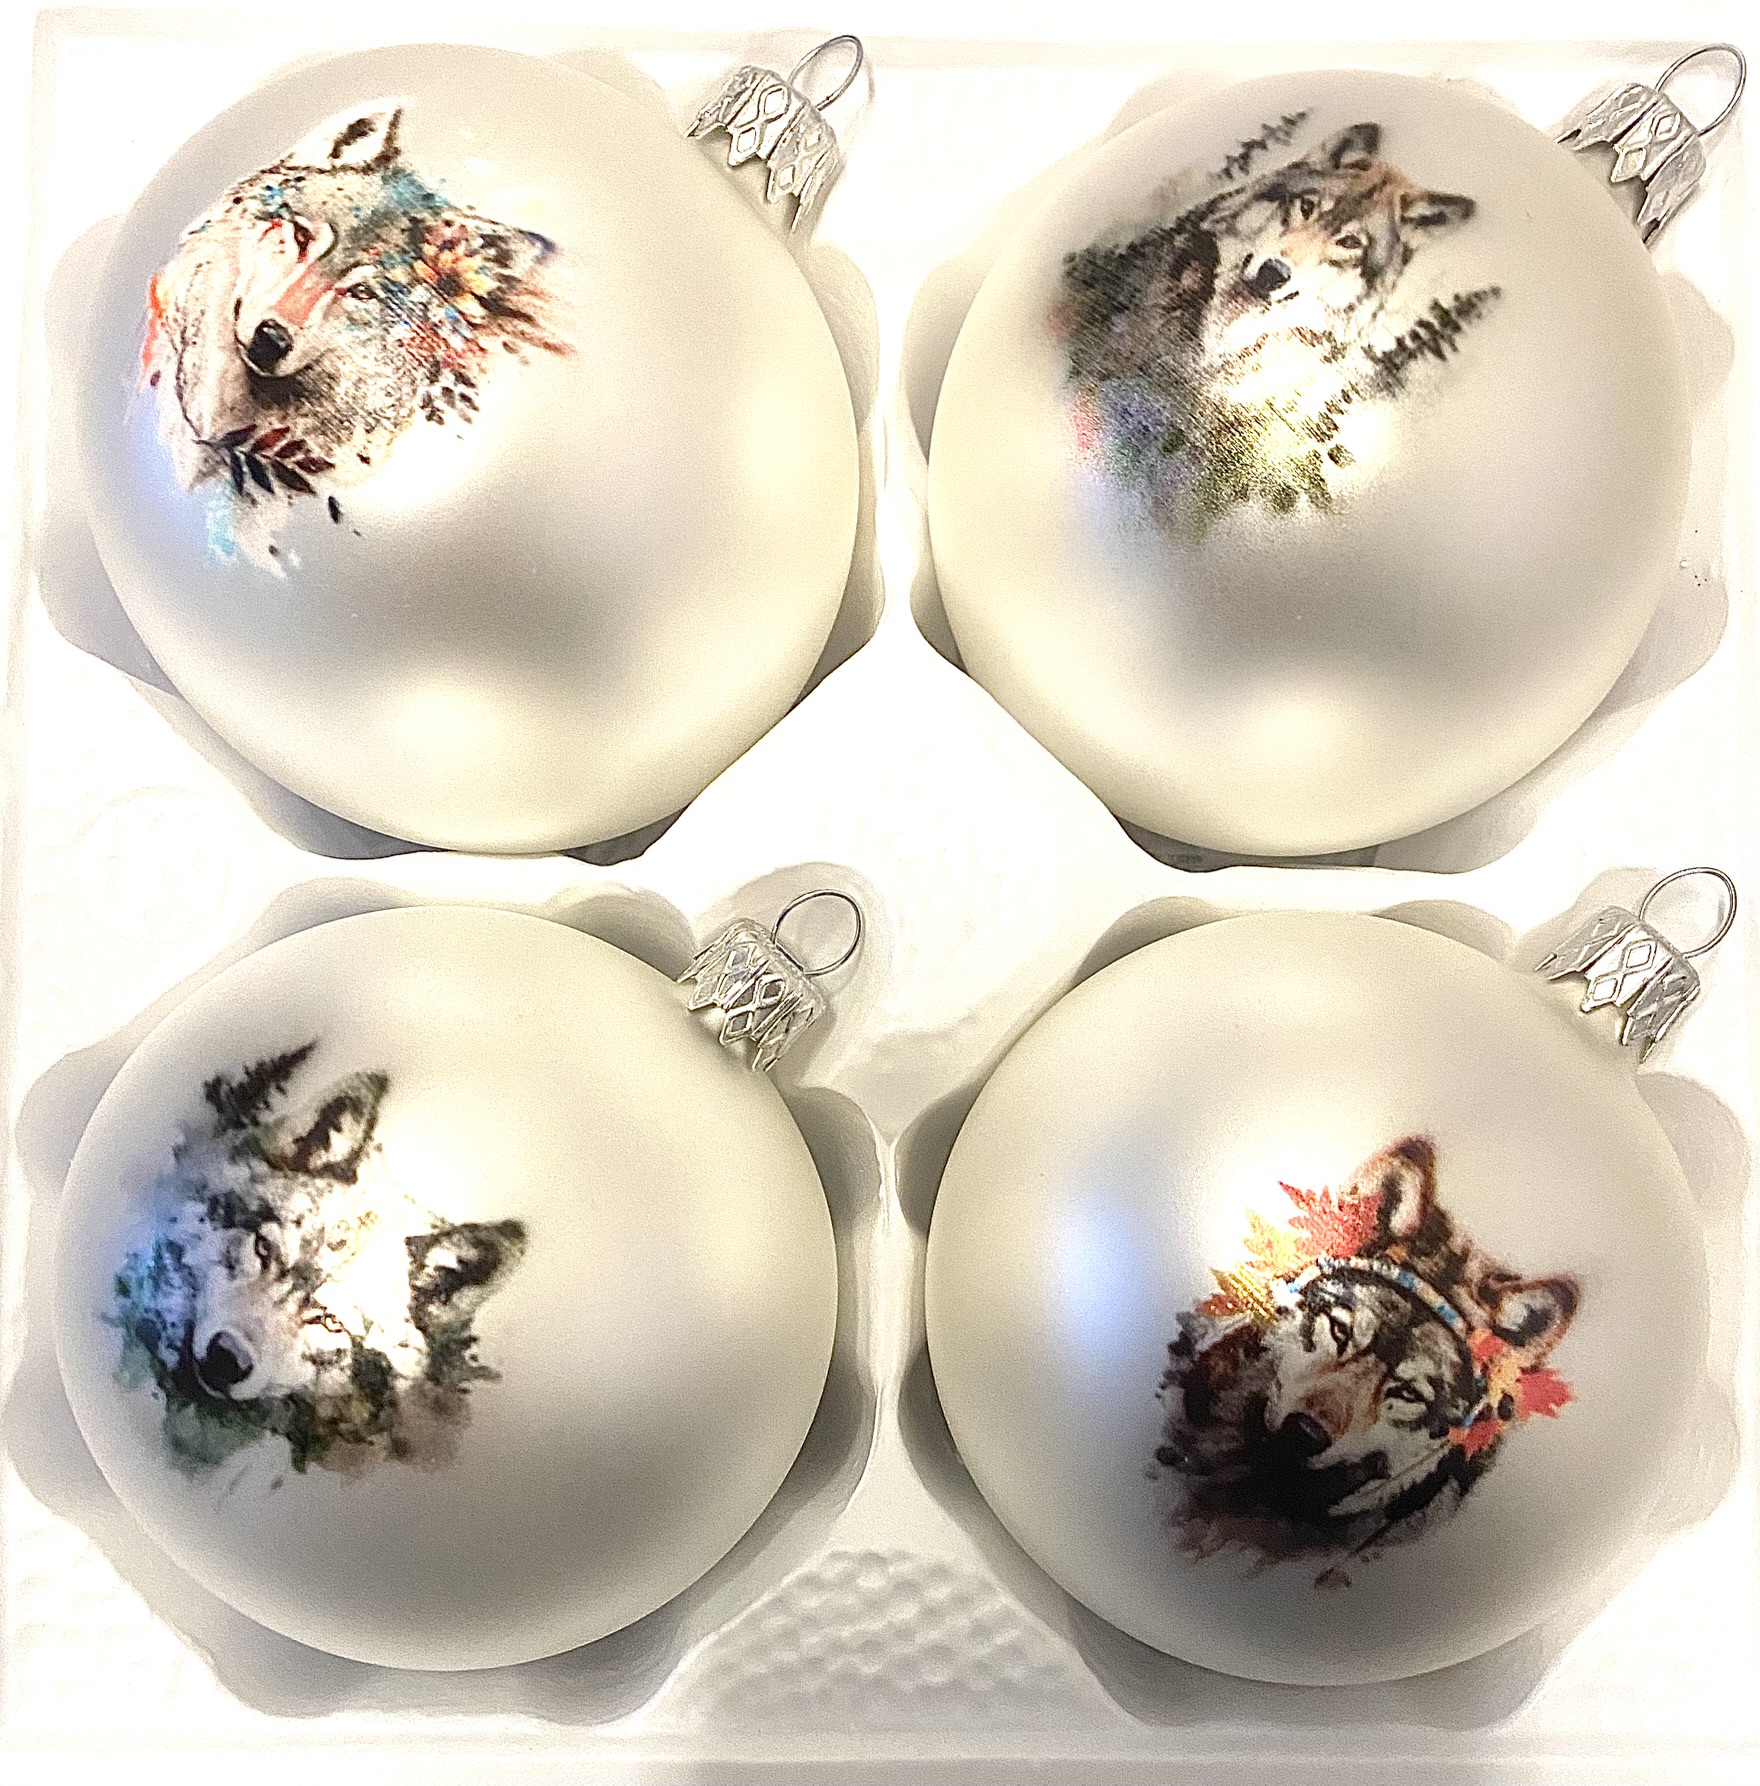 Vánoční kolekce Vlčí život - Skleněné vánoční koule - Sada 4 ks - Bílá - Velikost 8 cm Balení: 4ks, Barva: bílá, Velikost: 8 cm